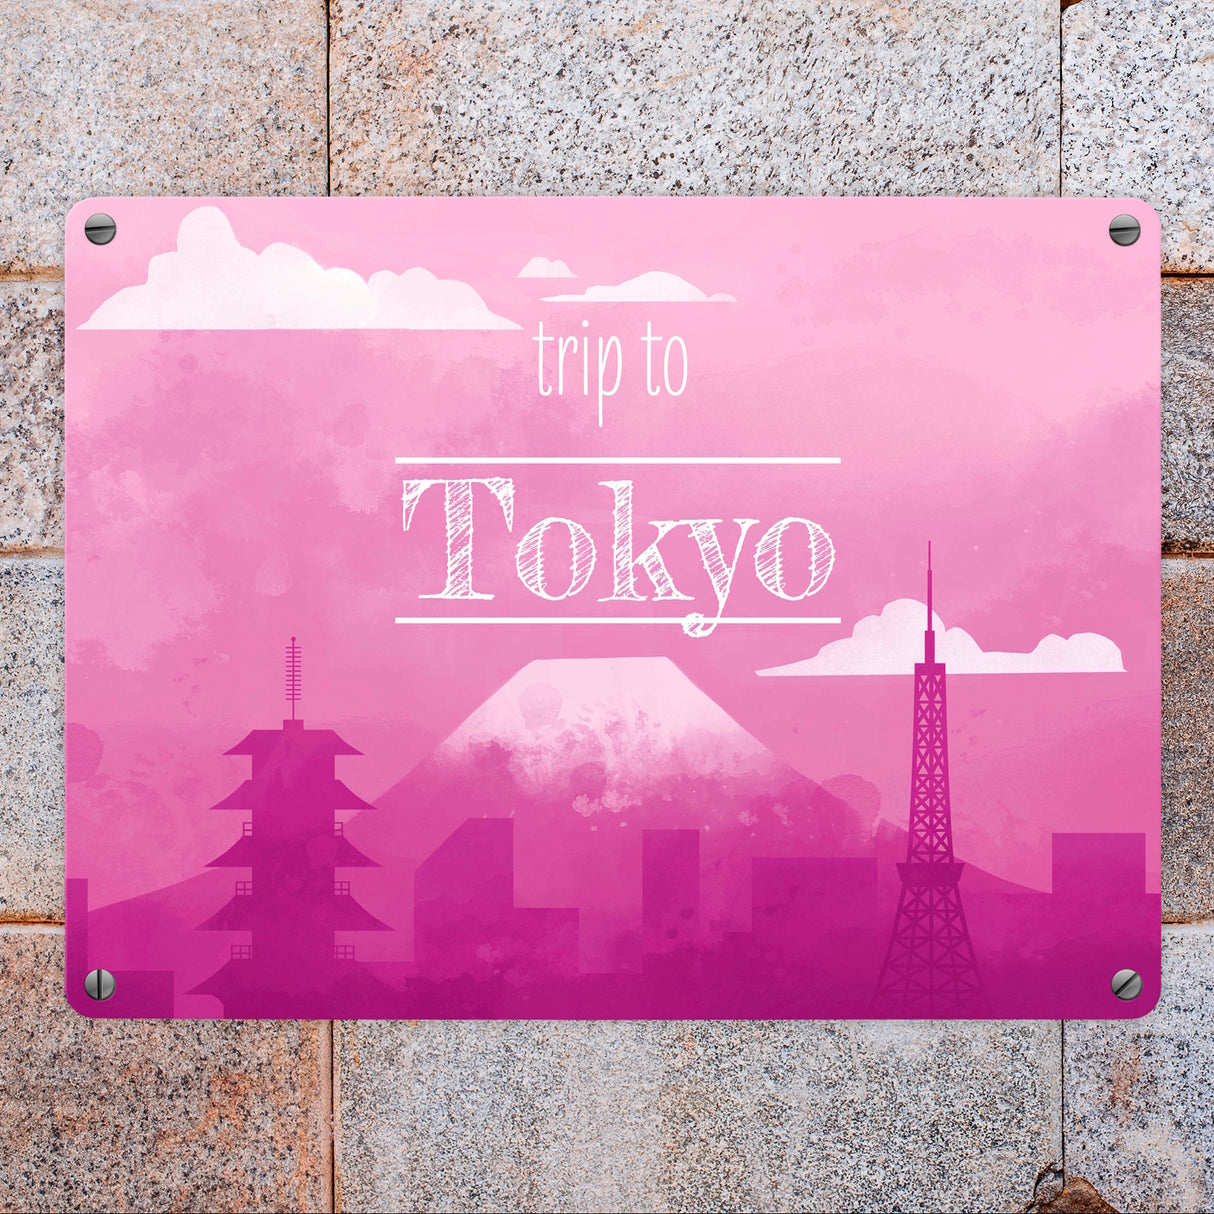 Metallschild in 15x20 cm für Fans von Städtetrips mit der Silhouette von Tokyo in pink